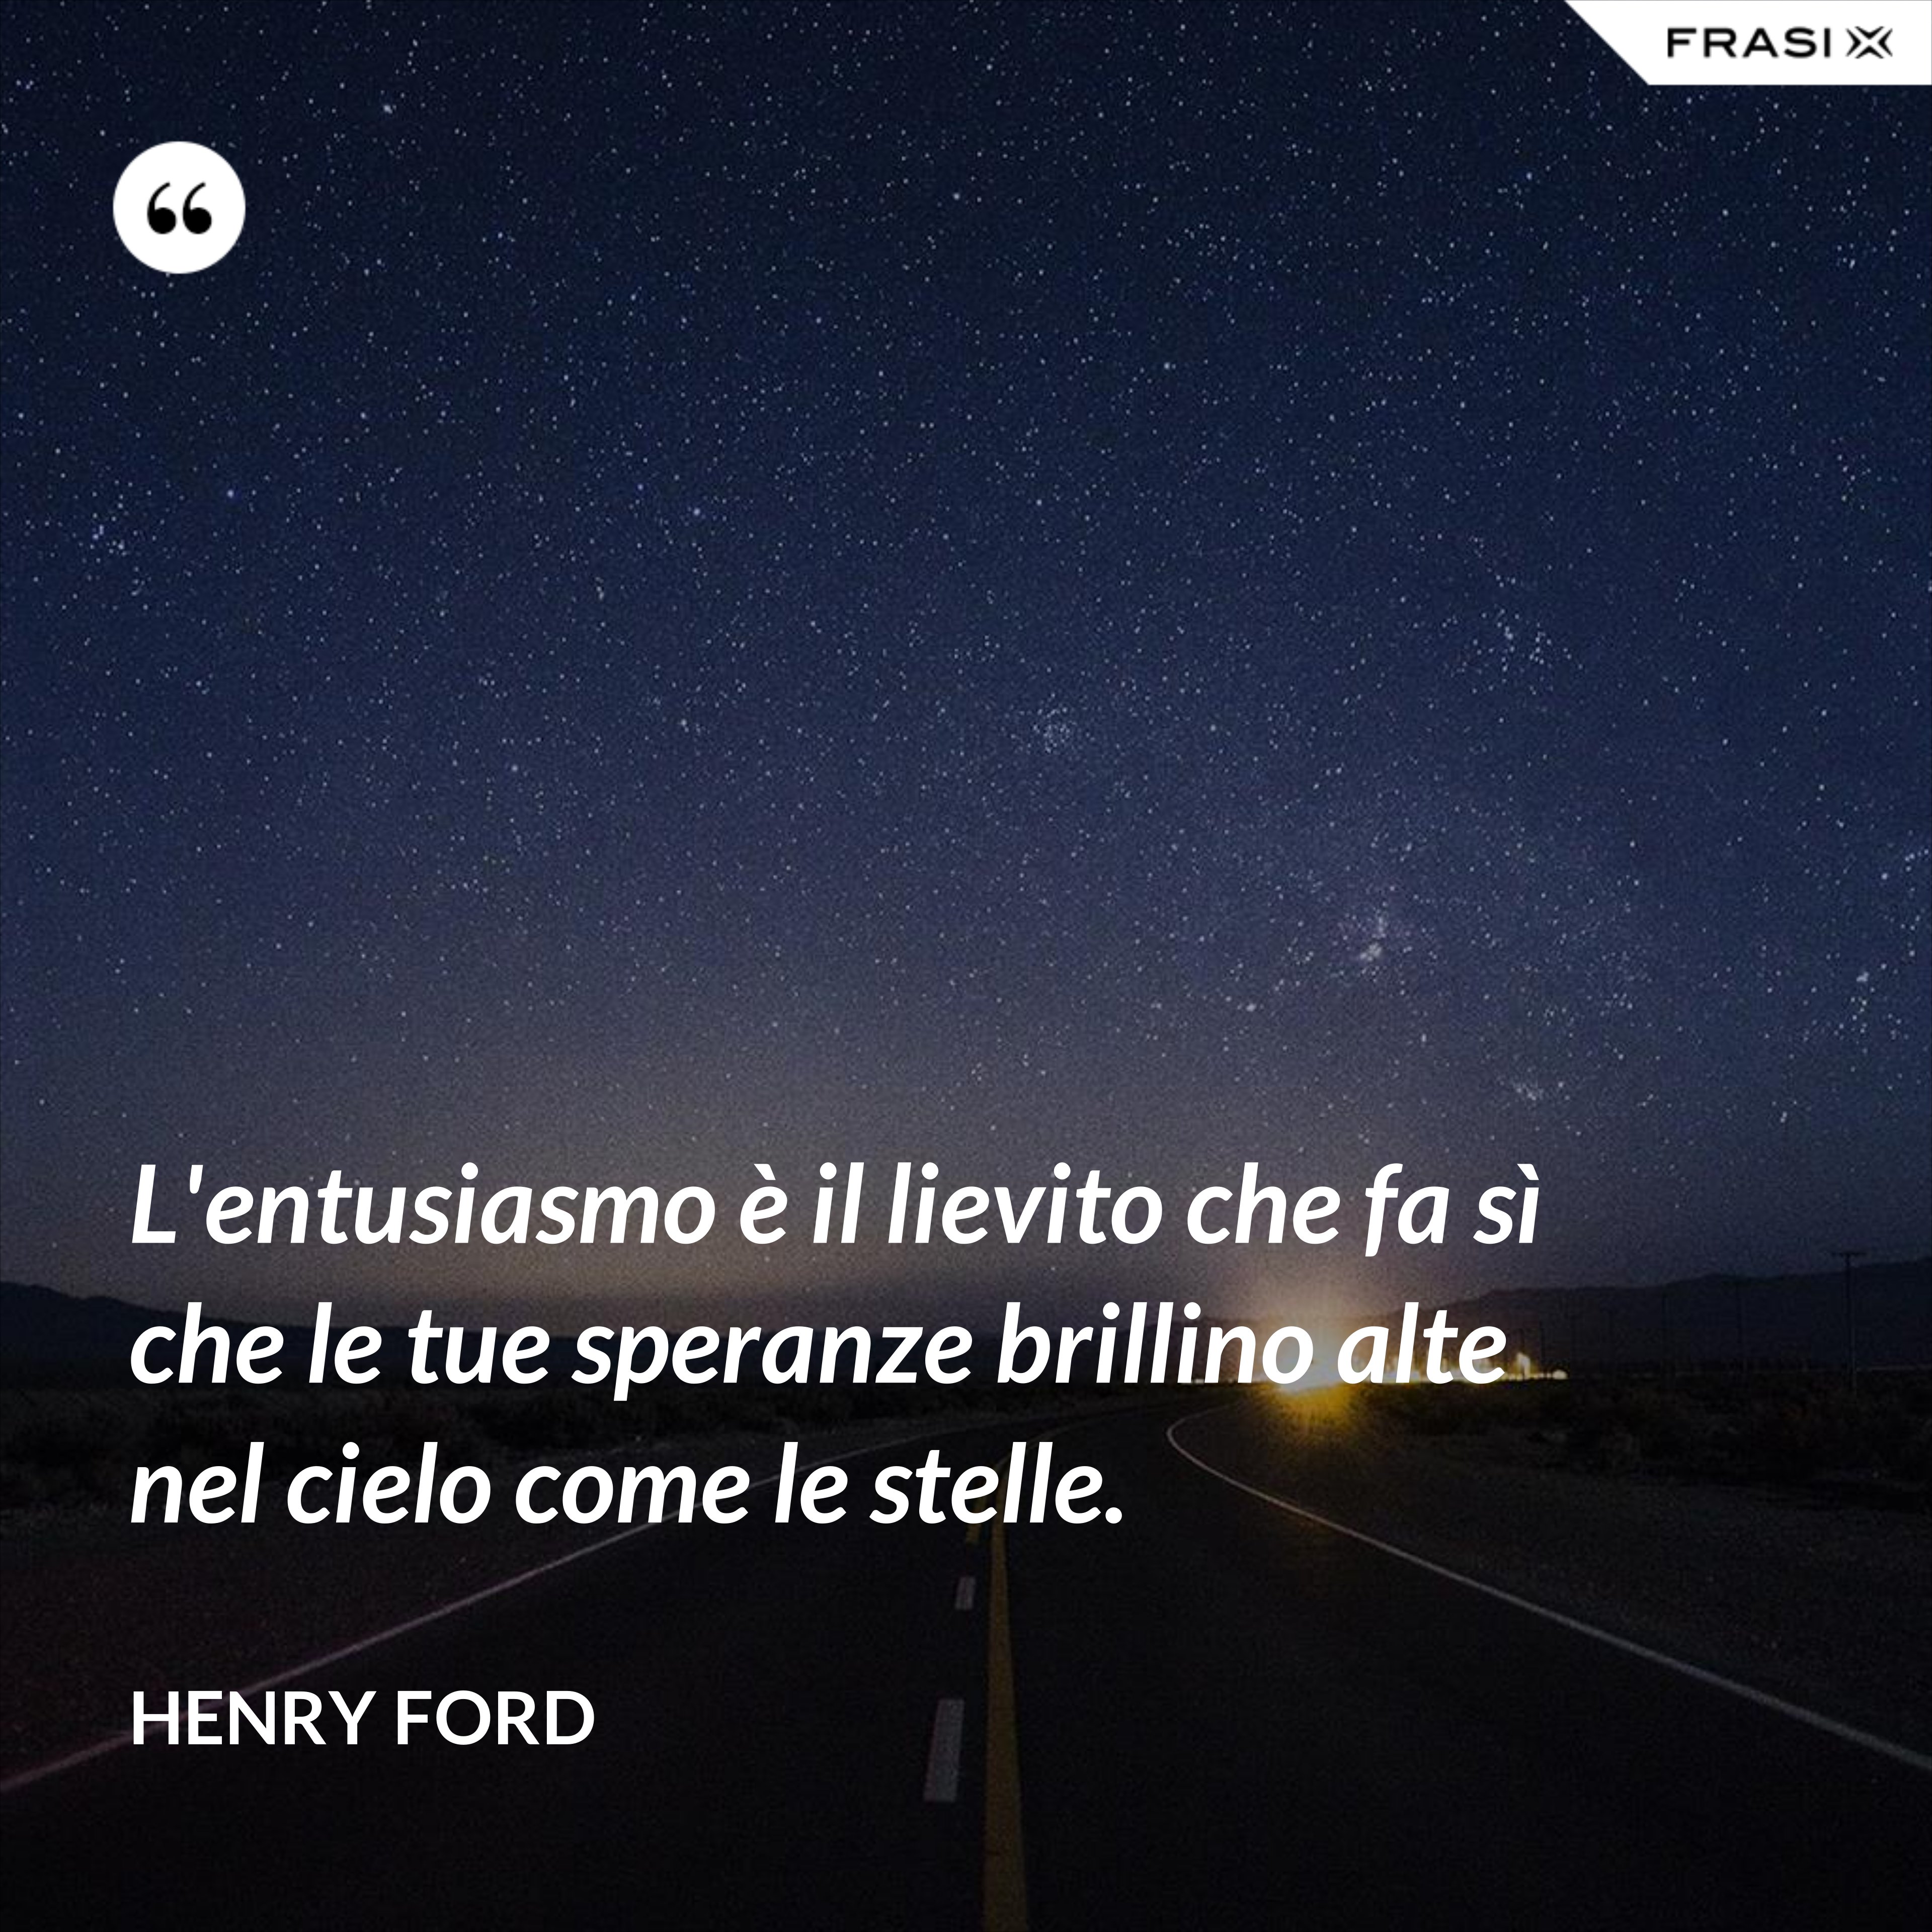 L'entusiasmo è il lievito che fa sì che le tue speranze brillino alte nel cielo come le stelle. - Henry Ford